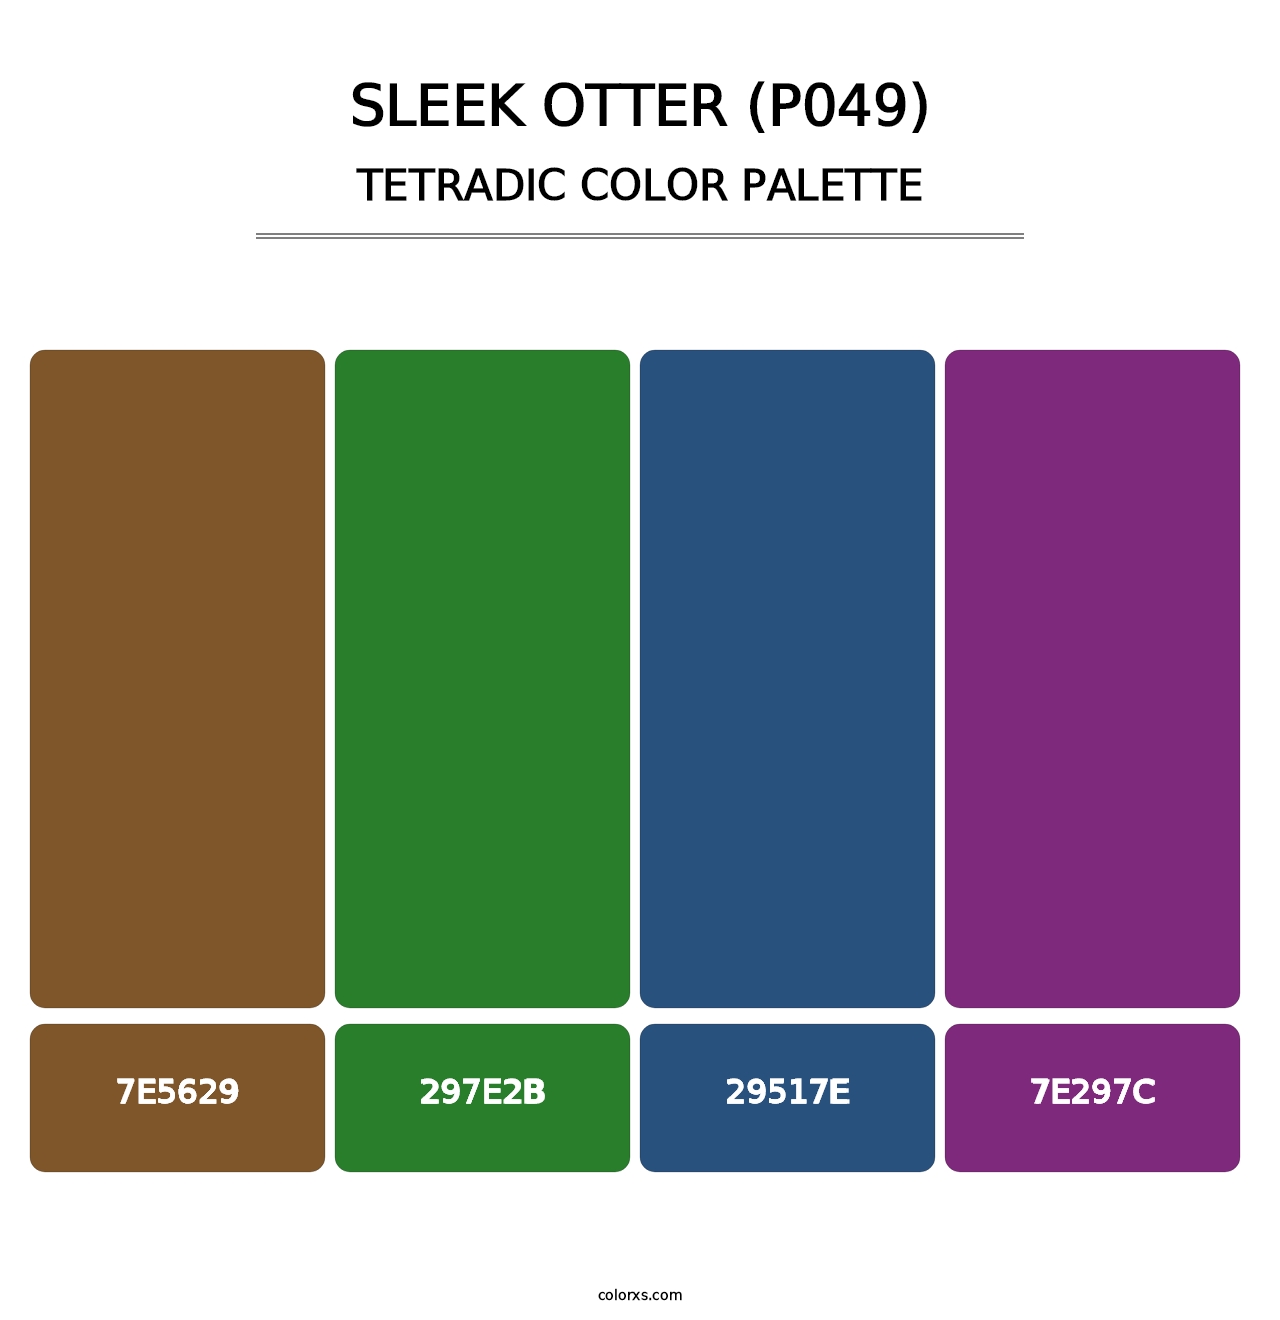 Sleek Otter (P049) - Tetradic Color Palette